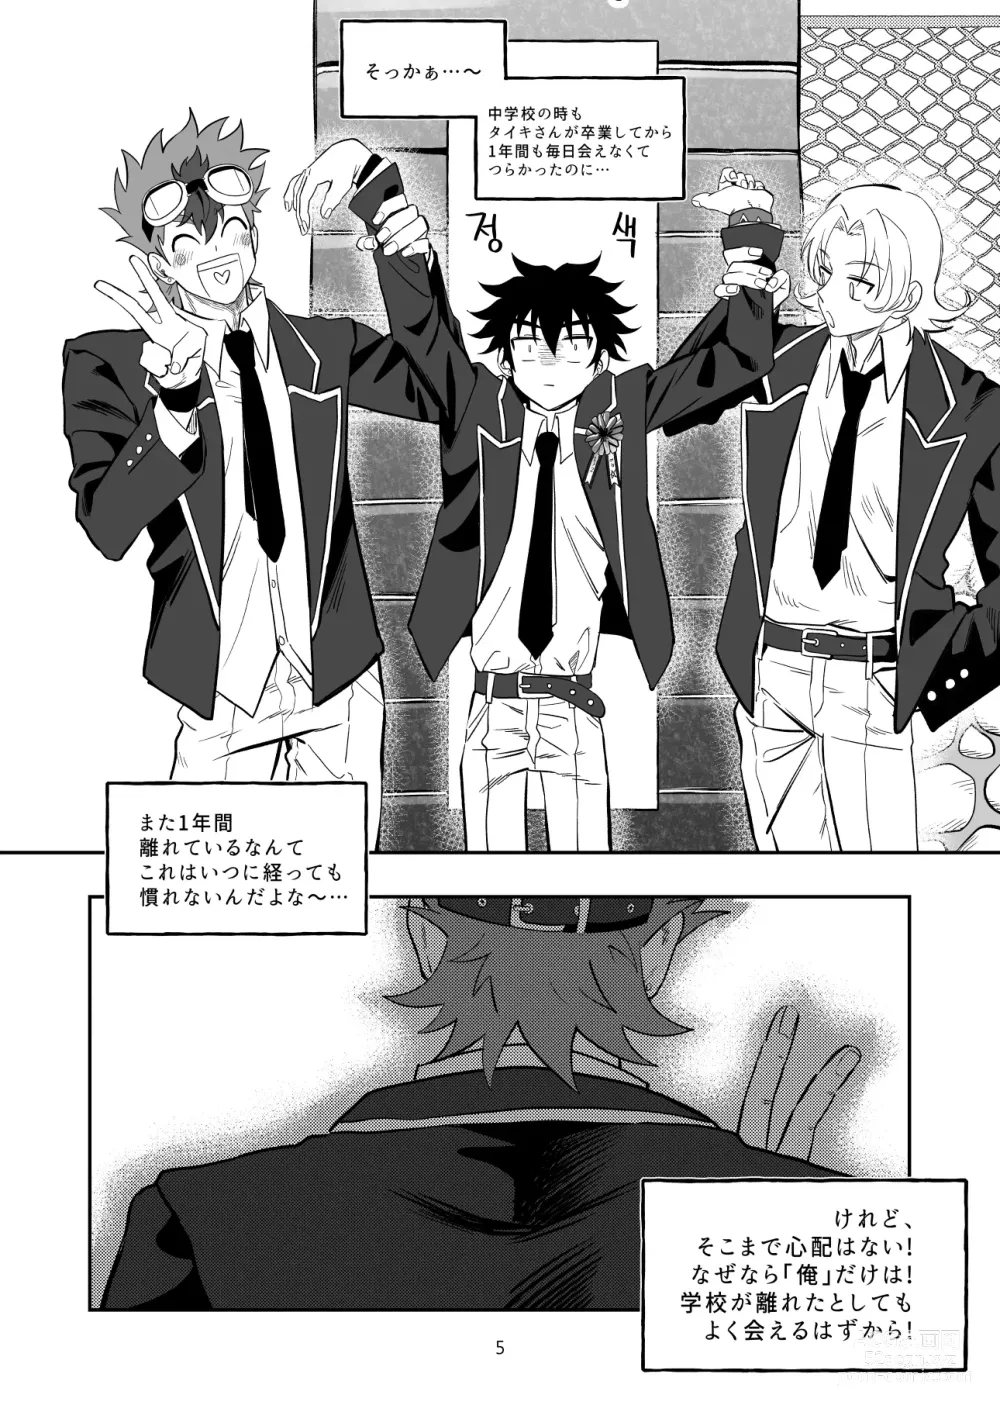 Page 6 of doujinshi Final Countdown